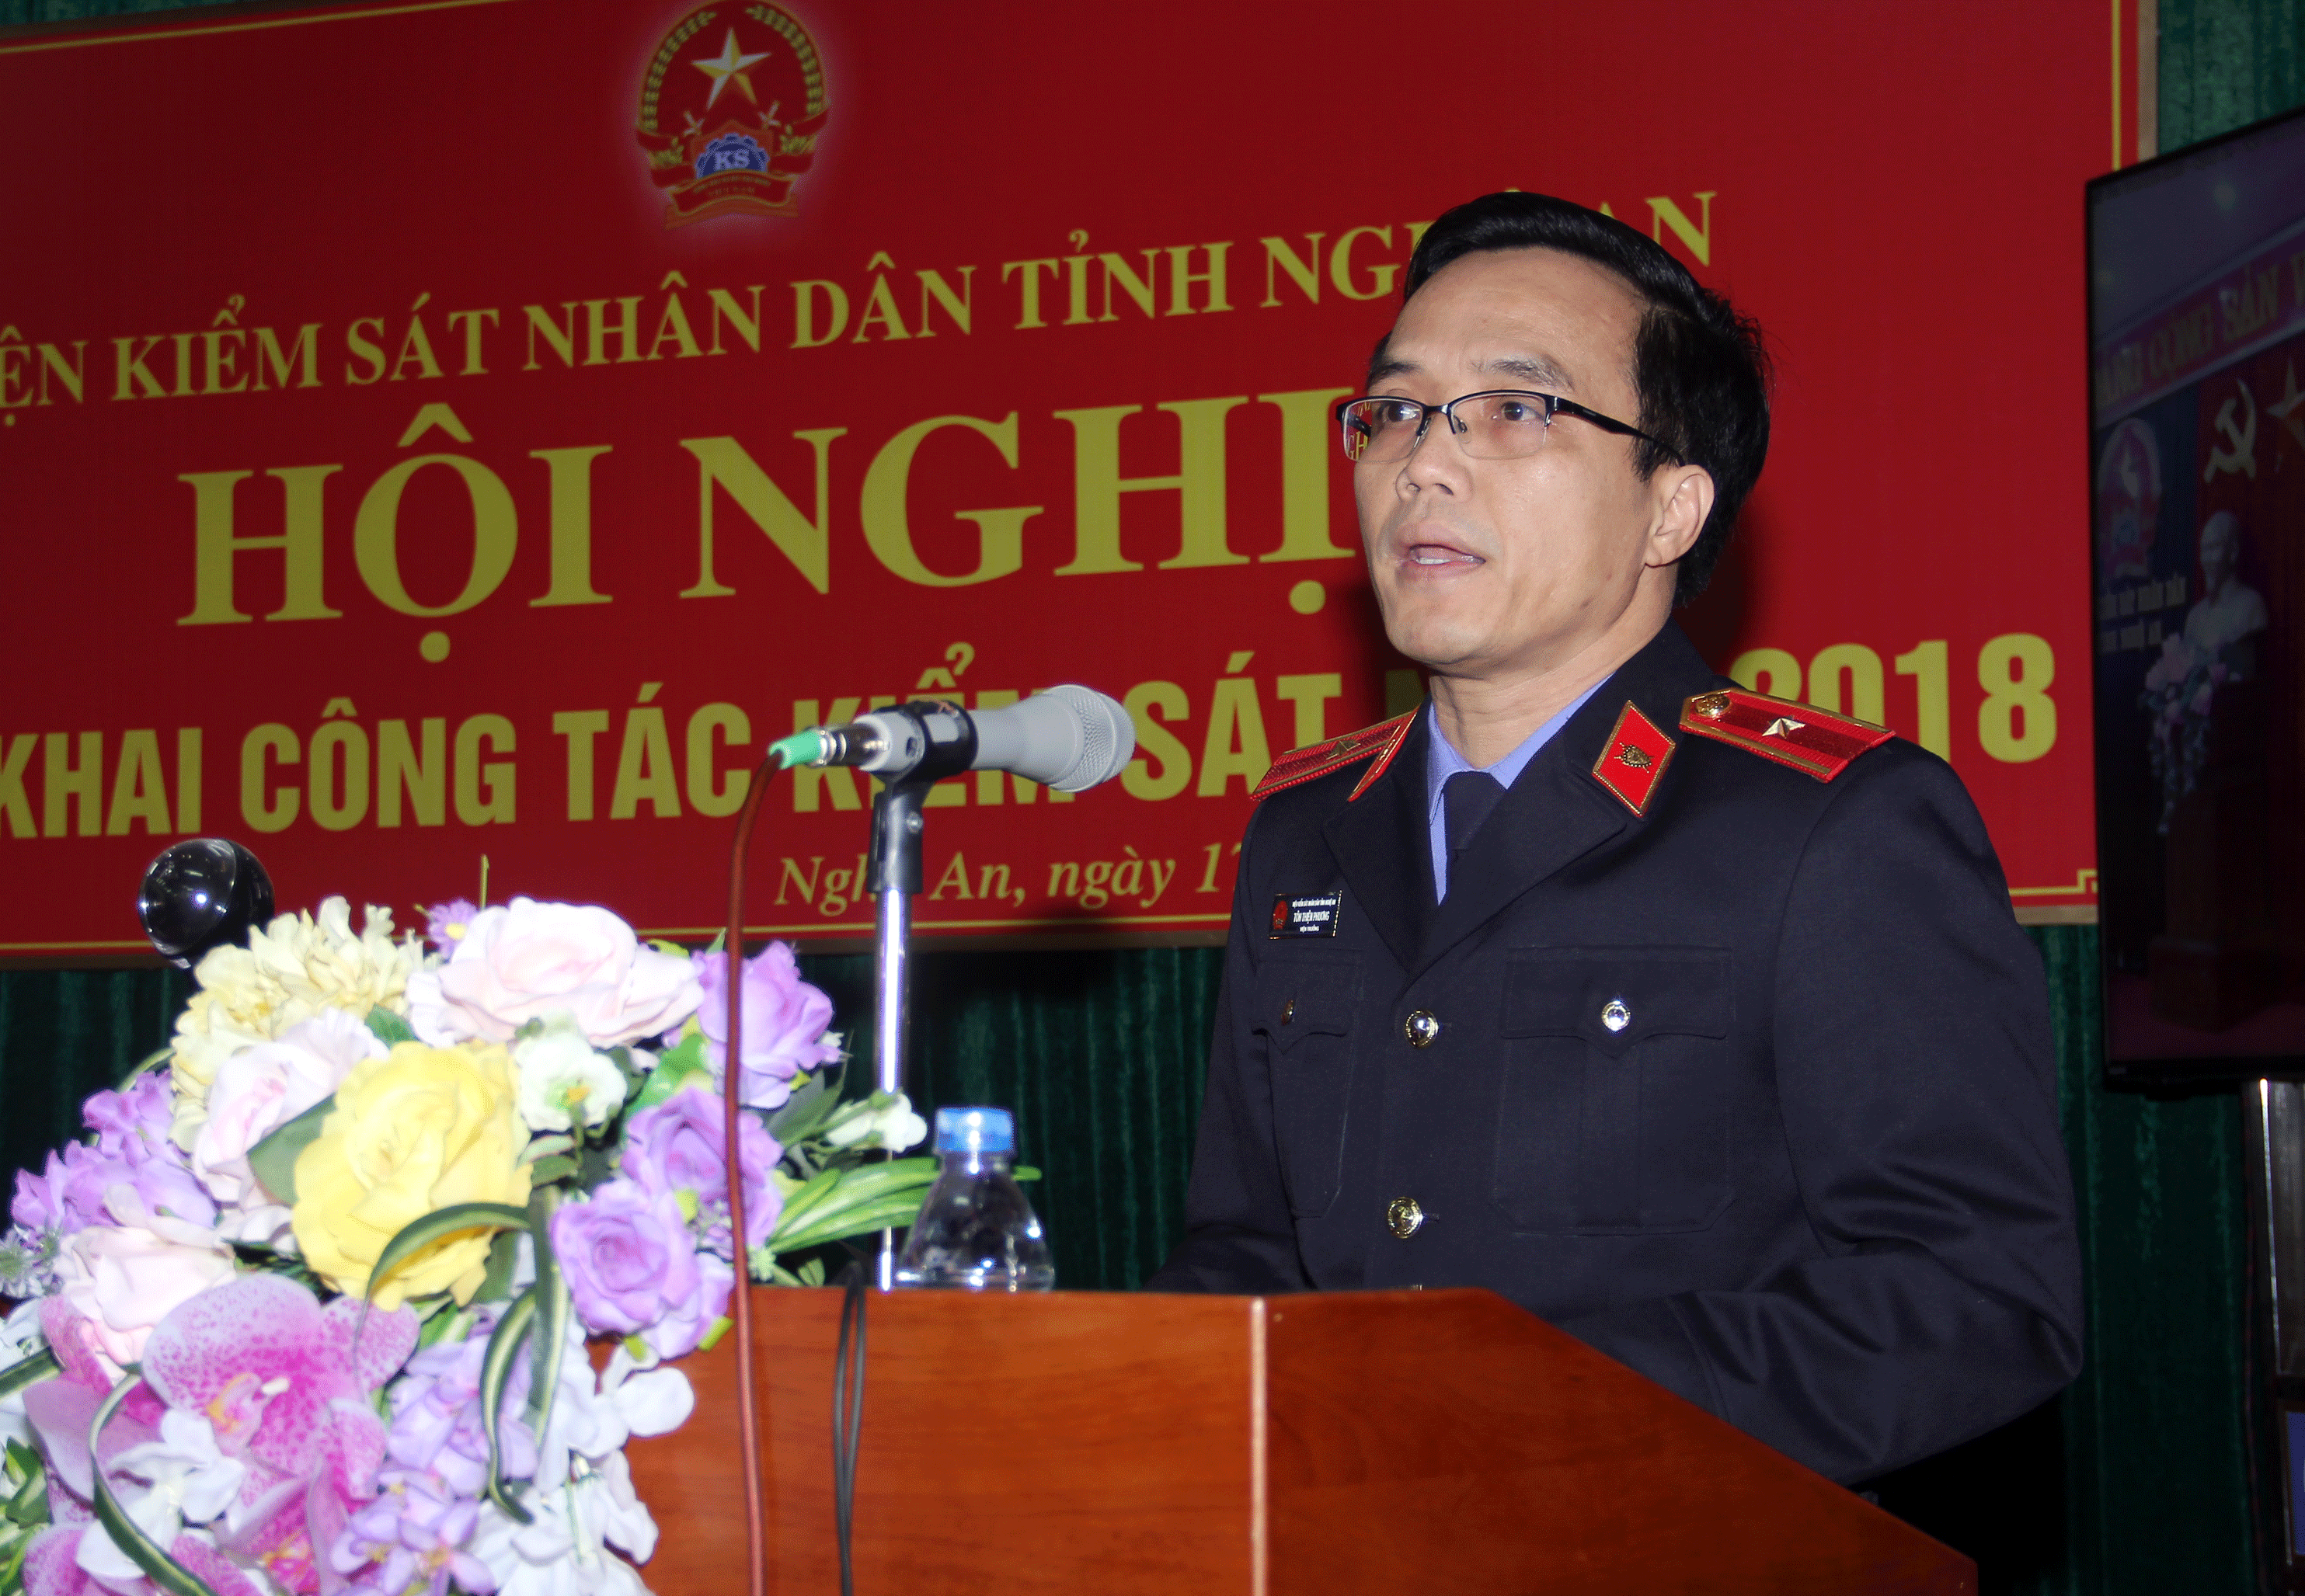 Viện trưởng Viện Kiểm sát nhân dân tỉnh Nghệ An, ông Tôn Thiện Phương báo cáo kết quả kiểm sát của ngành trong năm 2017. Ảnh: Phạm Bằng